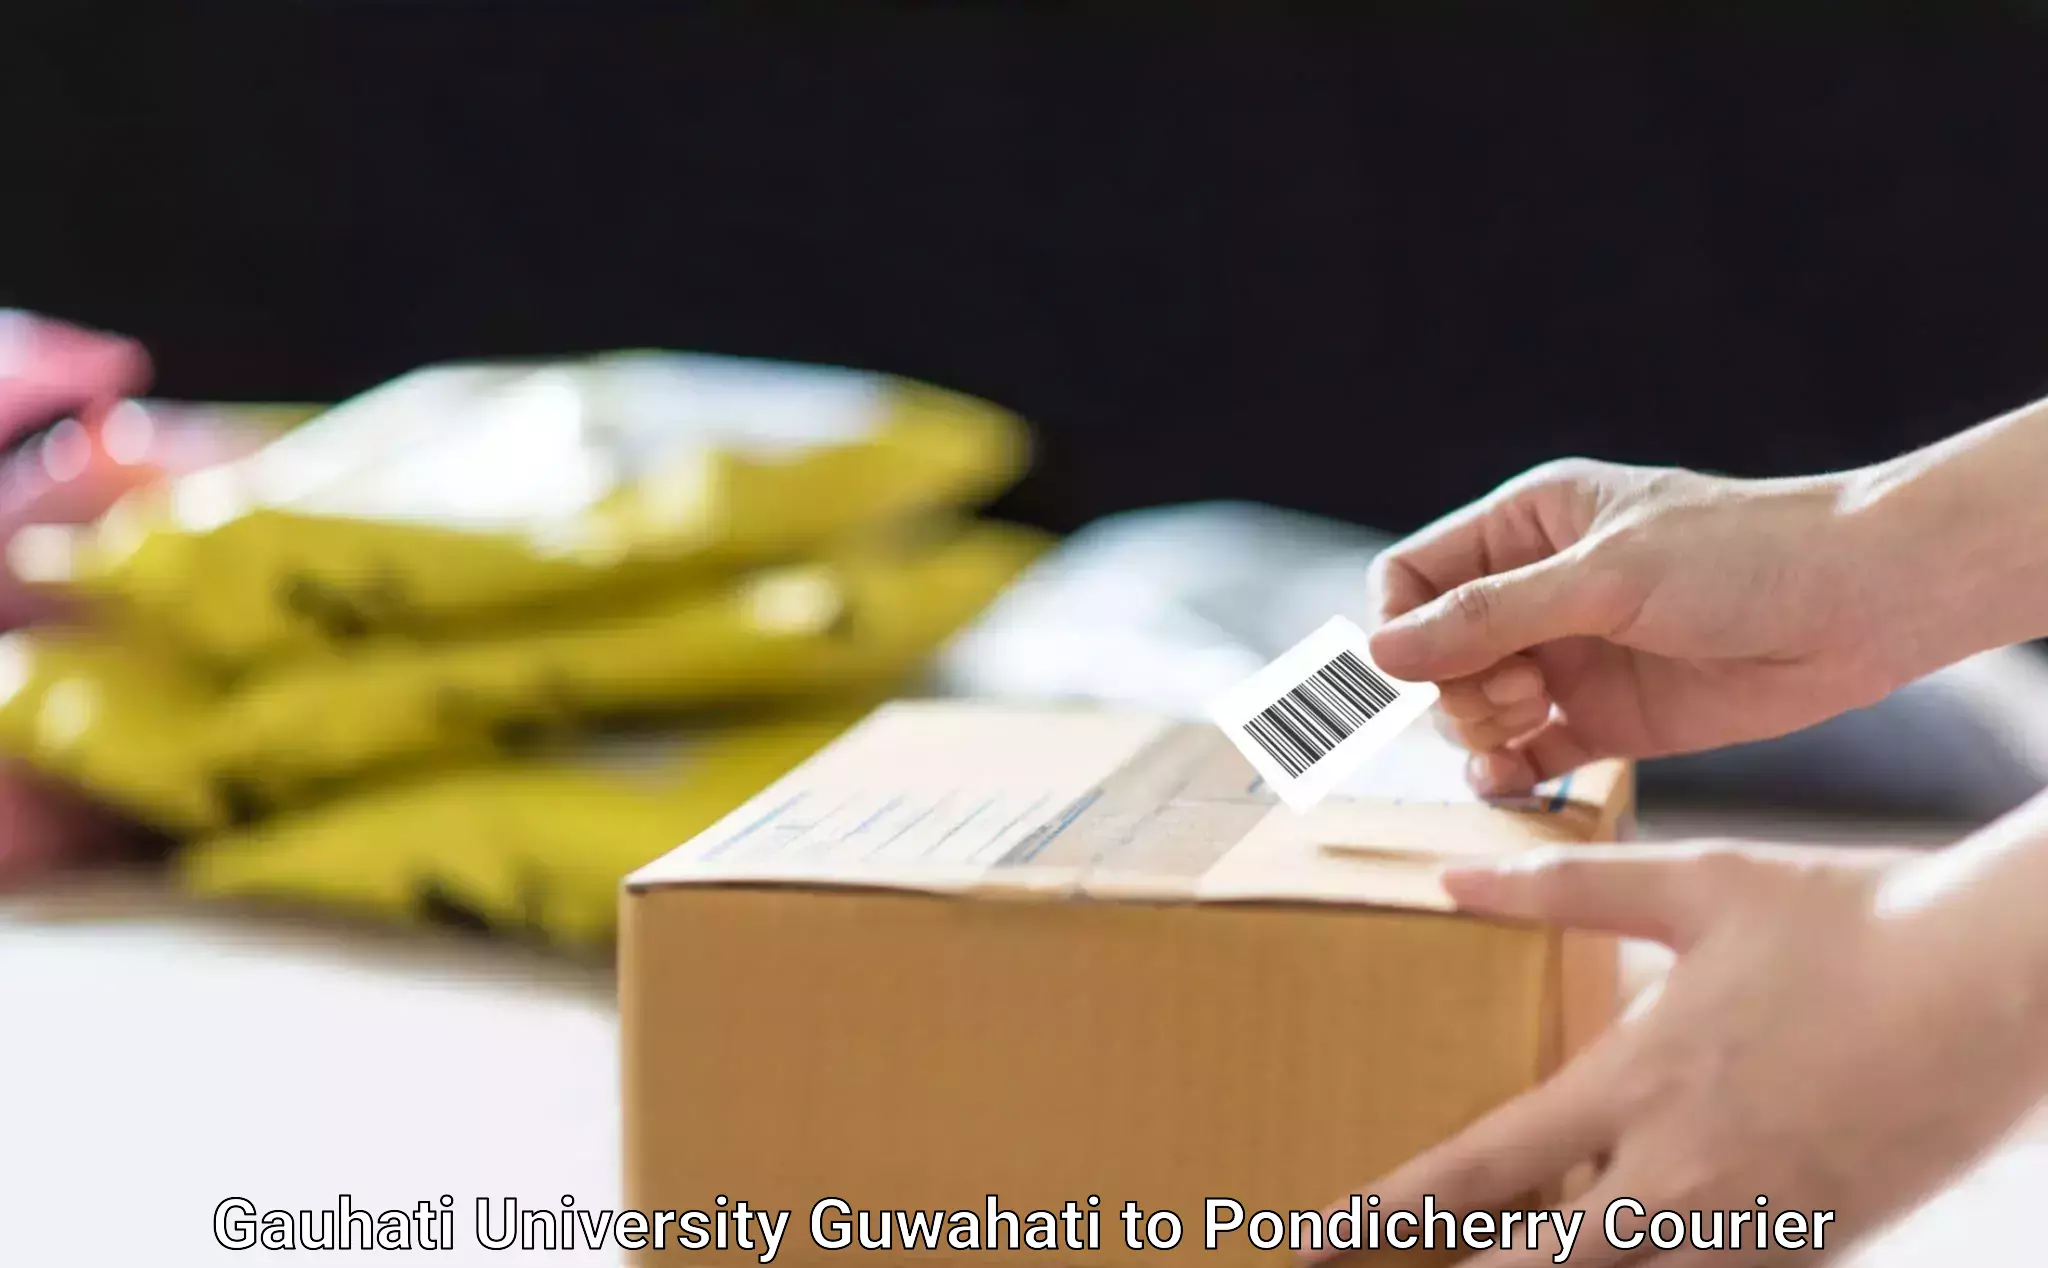 Supply chain efficiency Gauhati University Guwahati to Pondicherry